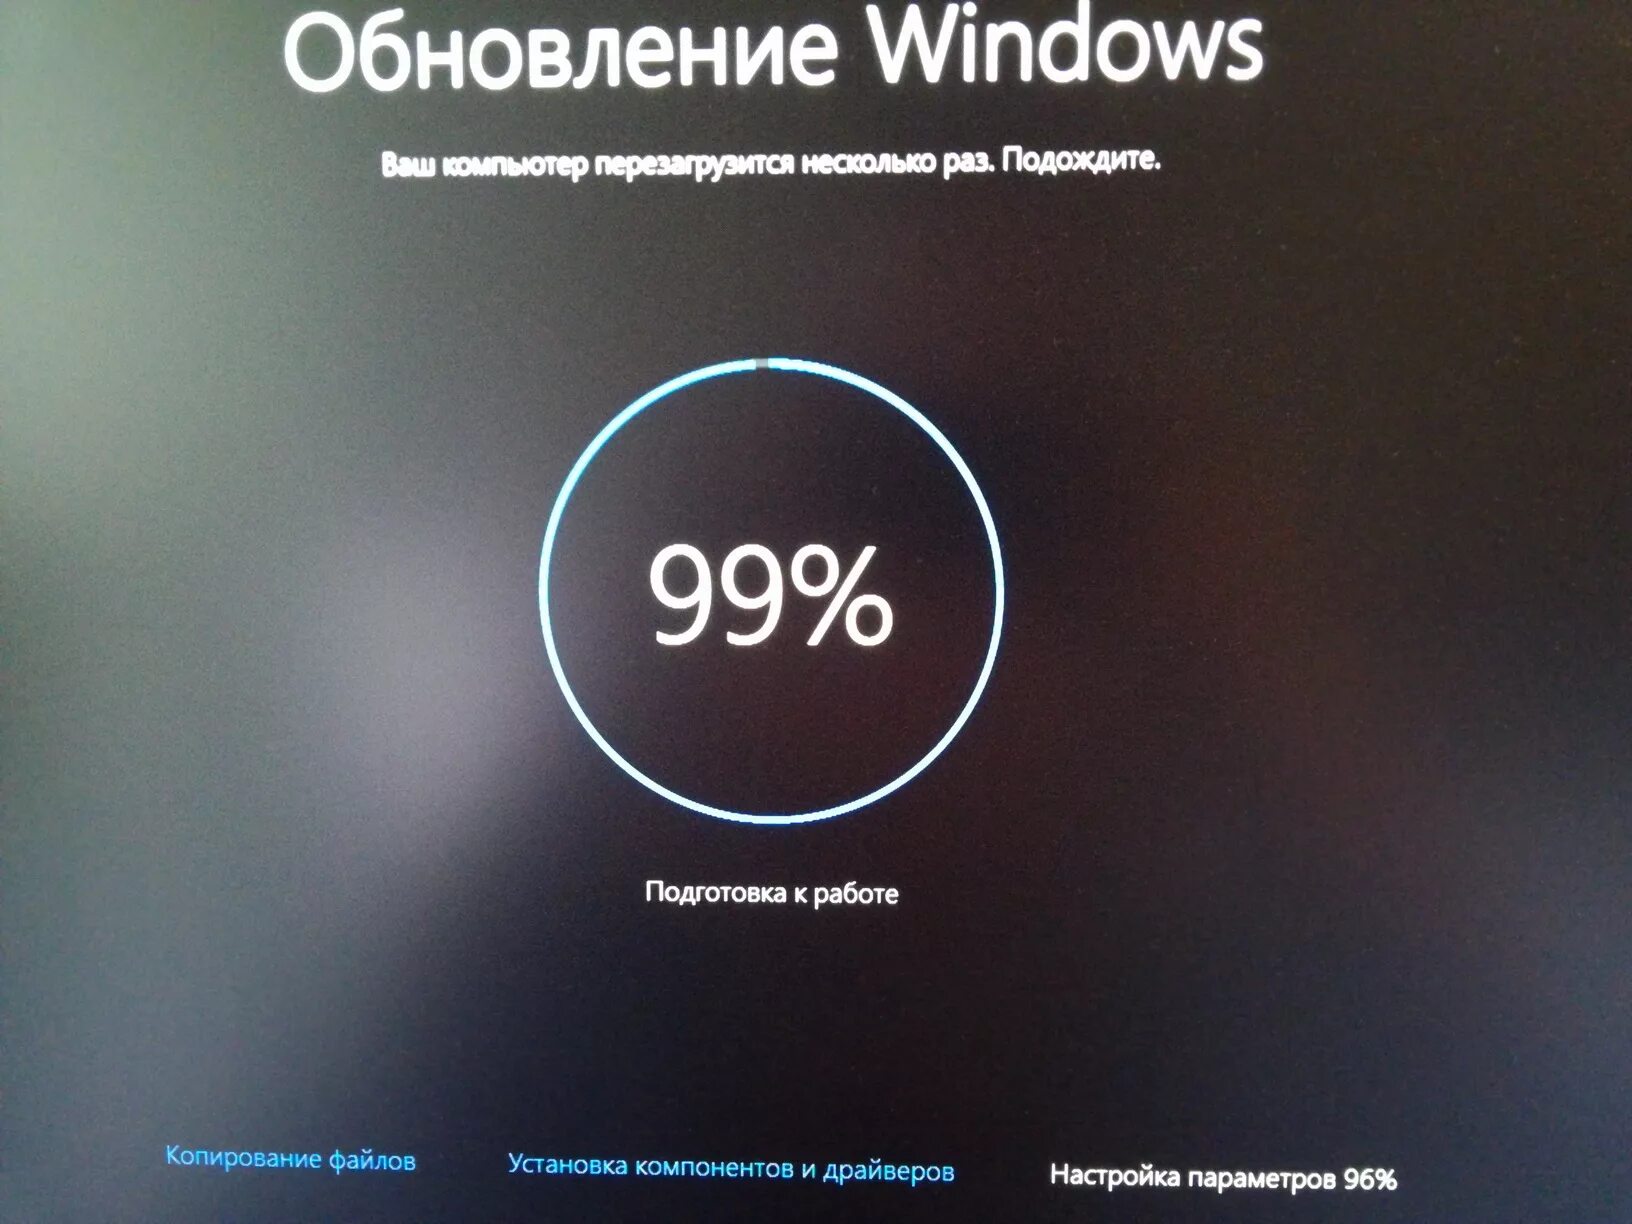 Не обновляется осу. Обновление системы. Обновление Windows. Обновление системы Windows. Обновление операционной системы Windows.